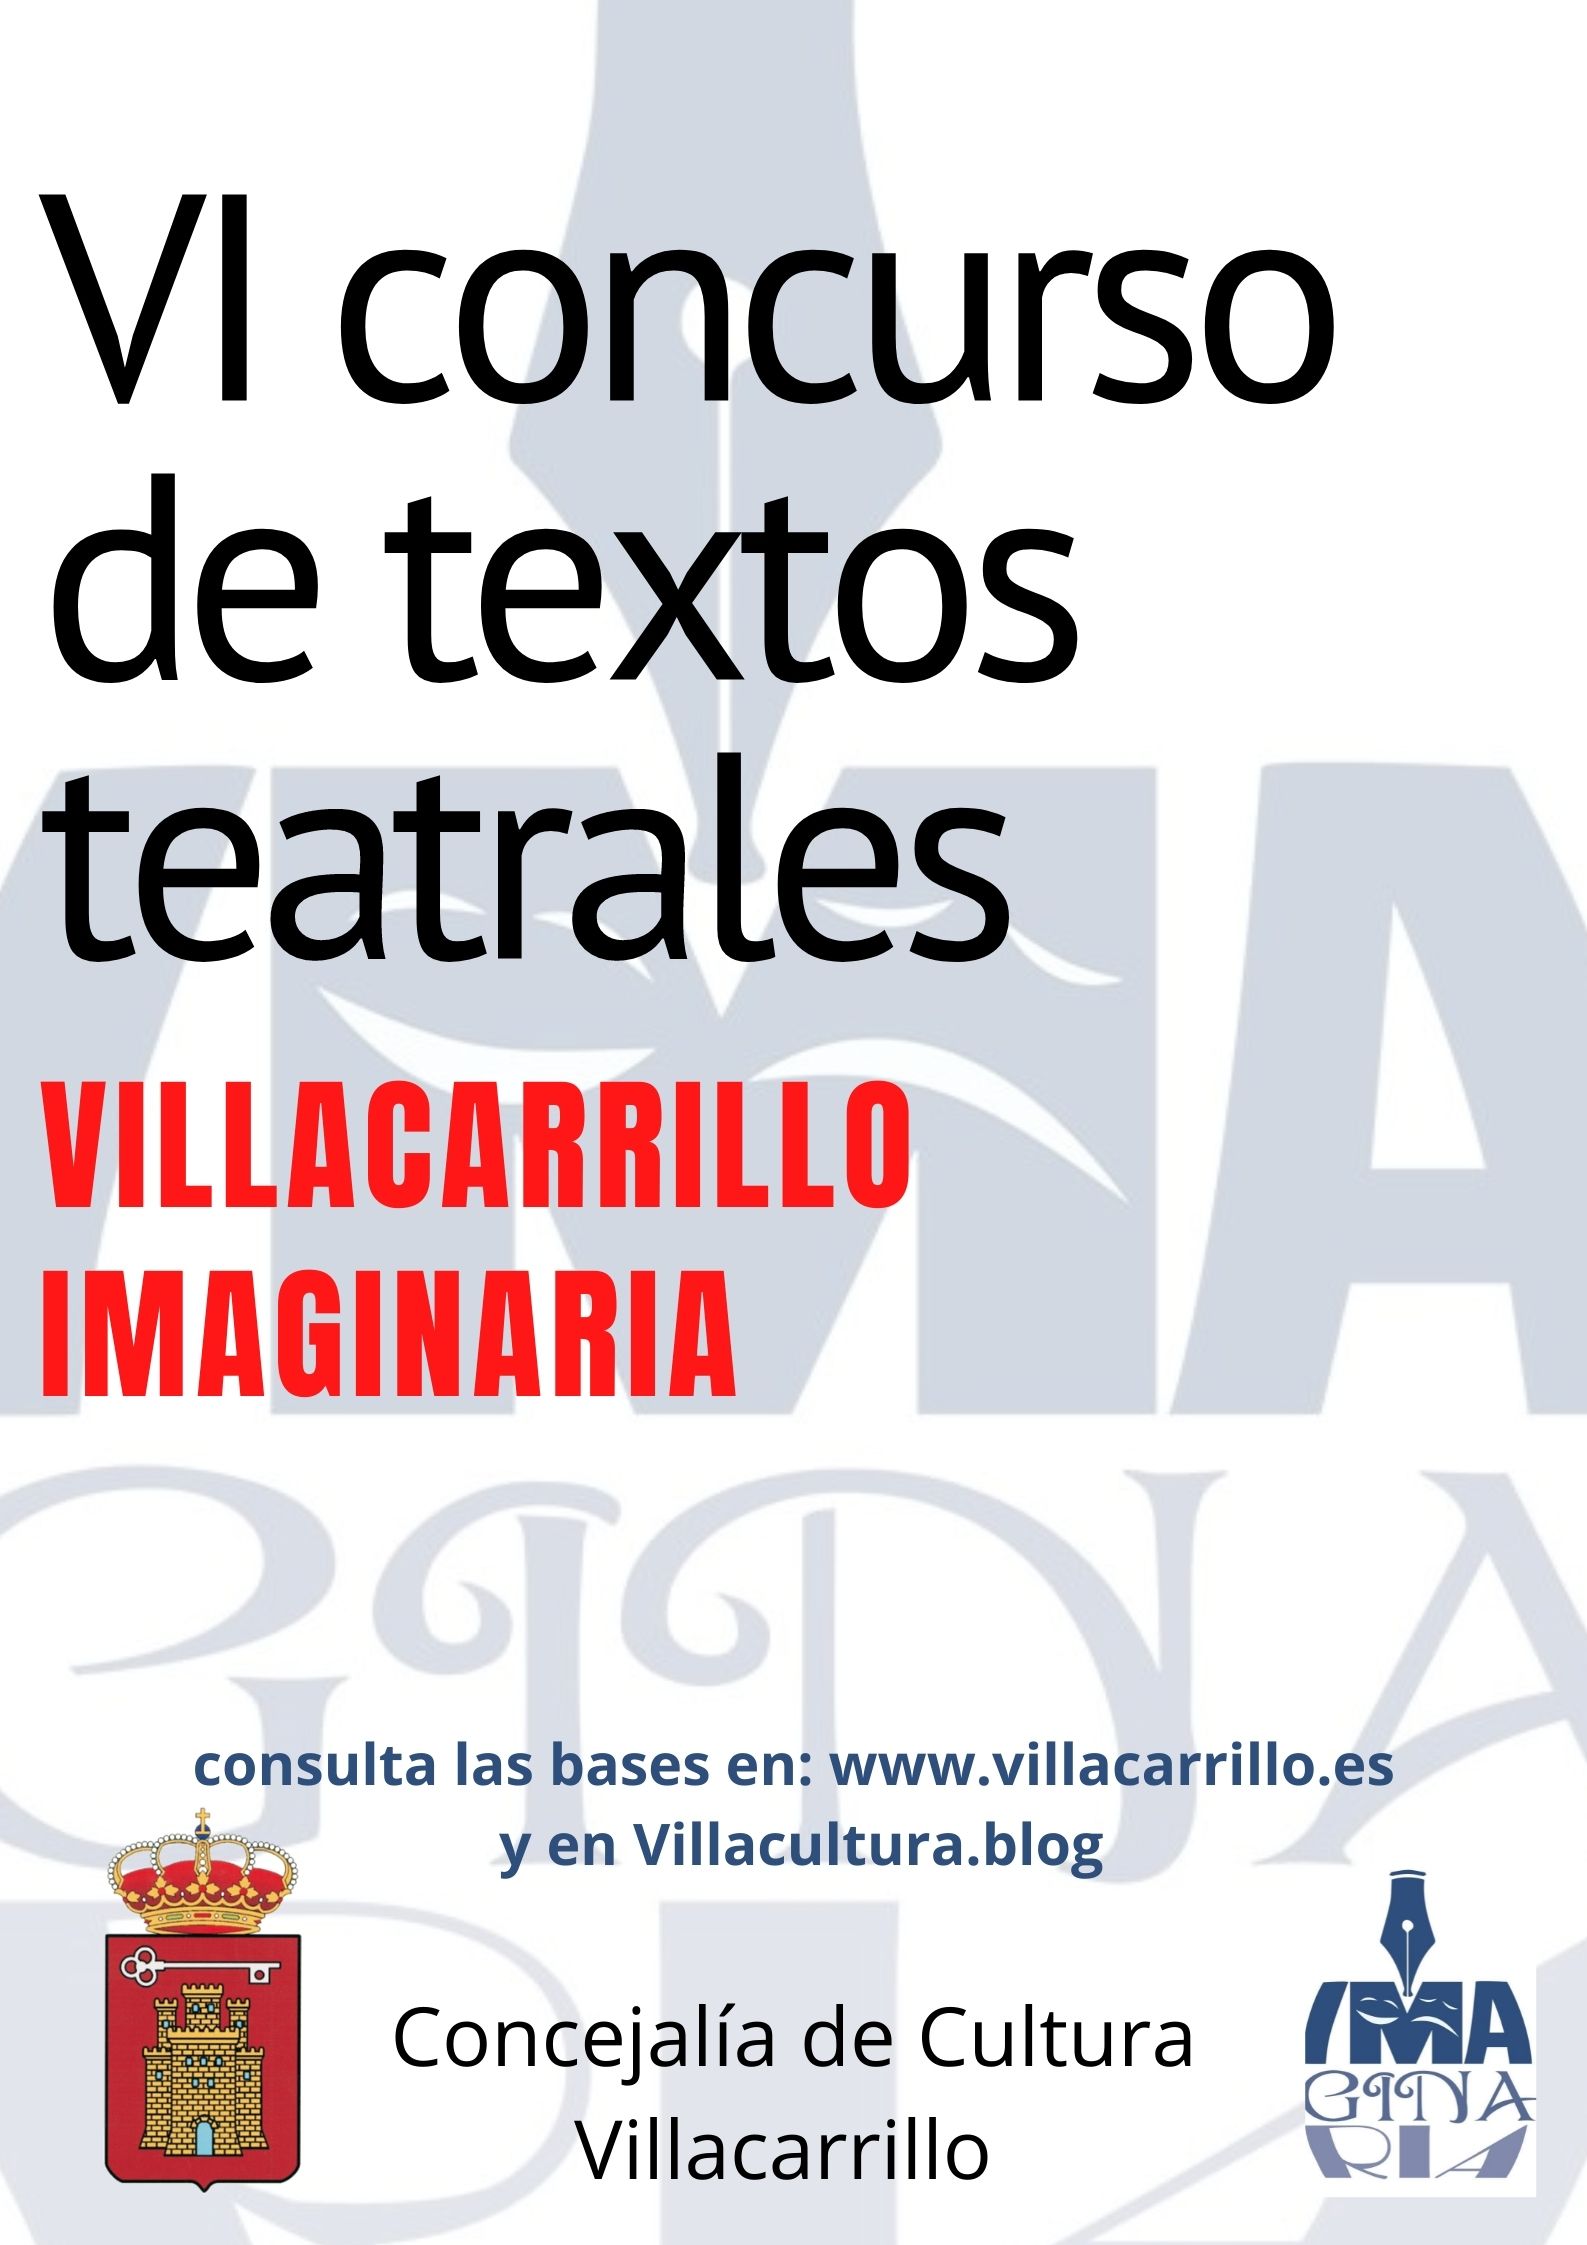 Nueva edición del Villacarrillo Imaginaria. Consulta las bases